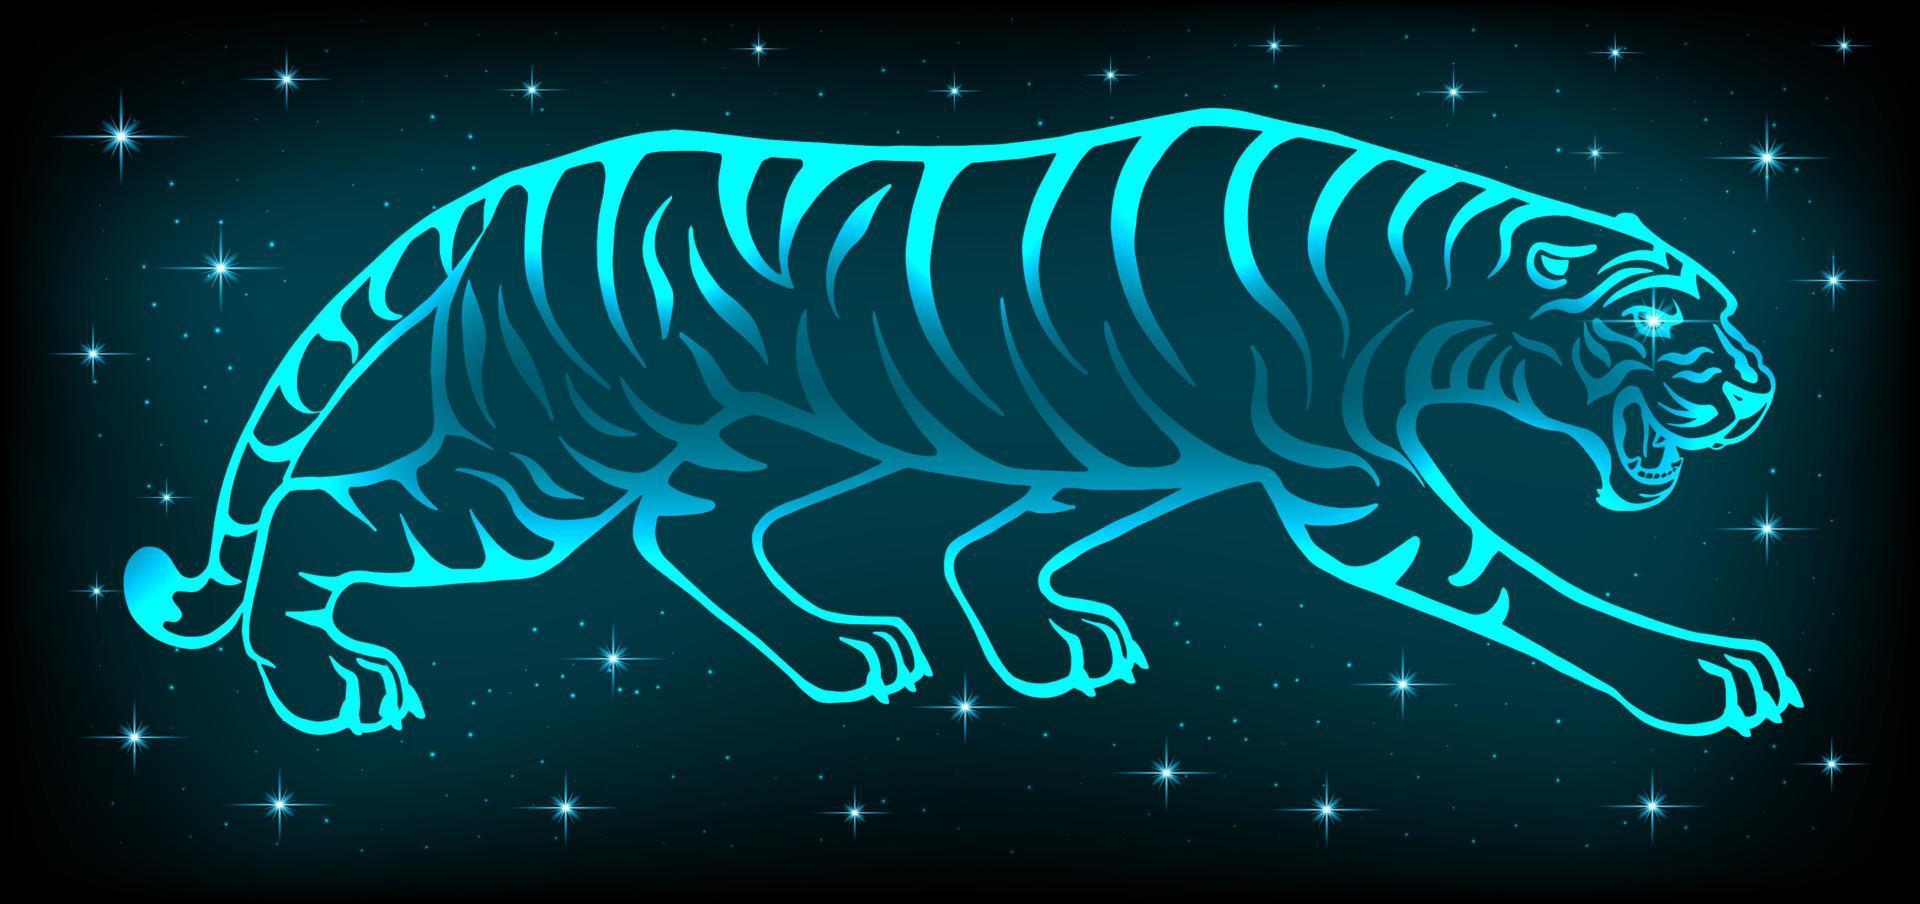 Neon Tiger 2022. Symbol des neuen Jahres nach dem östlichen Kalender. helles wildes Raubtier auf dunklem Hintergrund. für Postkarten, Kalender für Weihnachten. Vektor. vektor